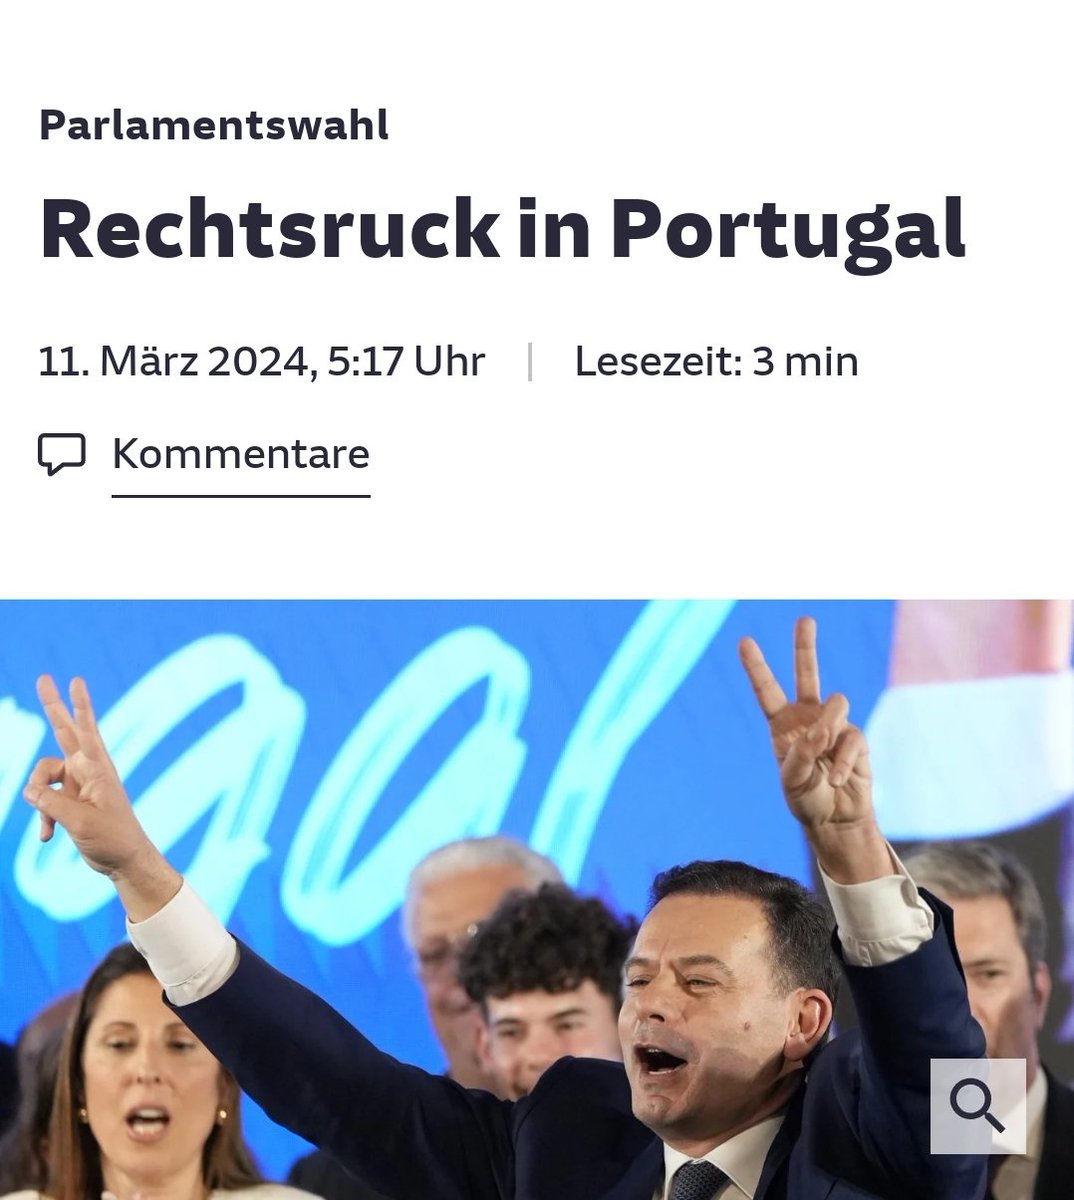 Based Portugal 🇵🇹

Für Linke alles Rassisten, denen man das Wahlrecht entziehen sollte – wie auch die anderen Länder, die rechts gewählt haben.

Die EU-Wahl im Sommer wird für die jedenfalls richtig salzig.